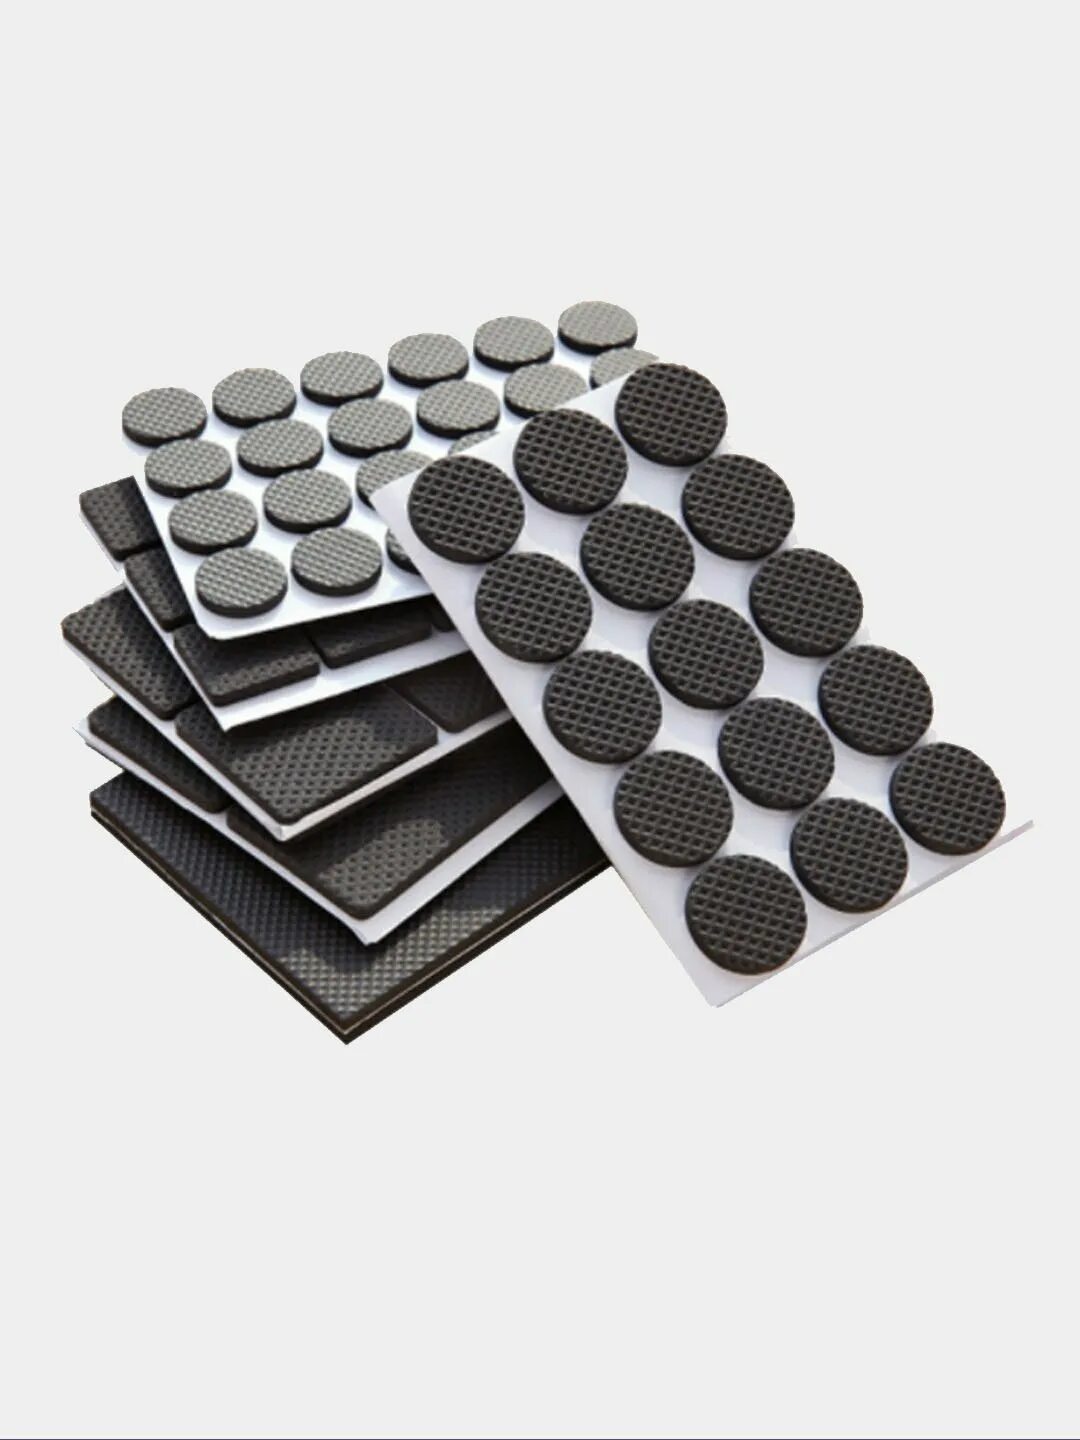 Накладки на ножки мебели y492 i.k черные полимерные 16 шт, 20 мм. Резиновые подкладки для мебели. Подкладки под ножки мебели. Противоскользящие накладки для мебели.